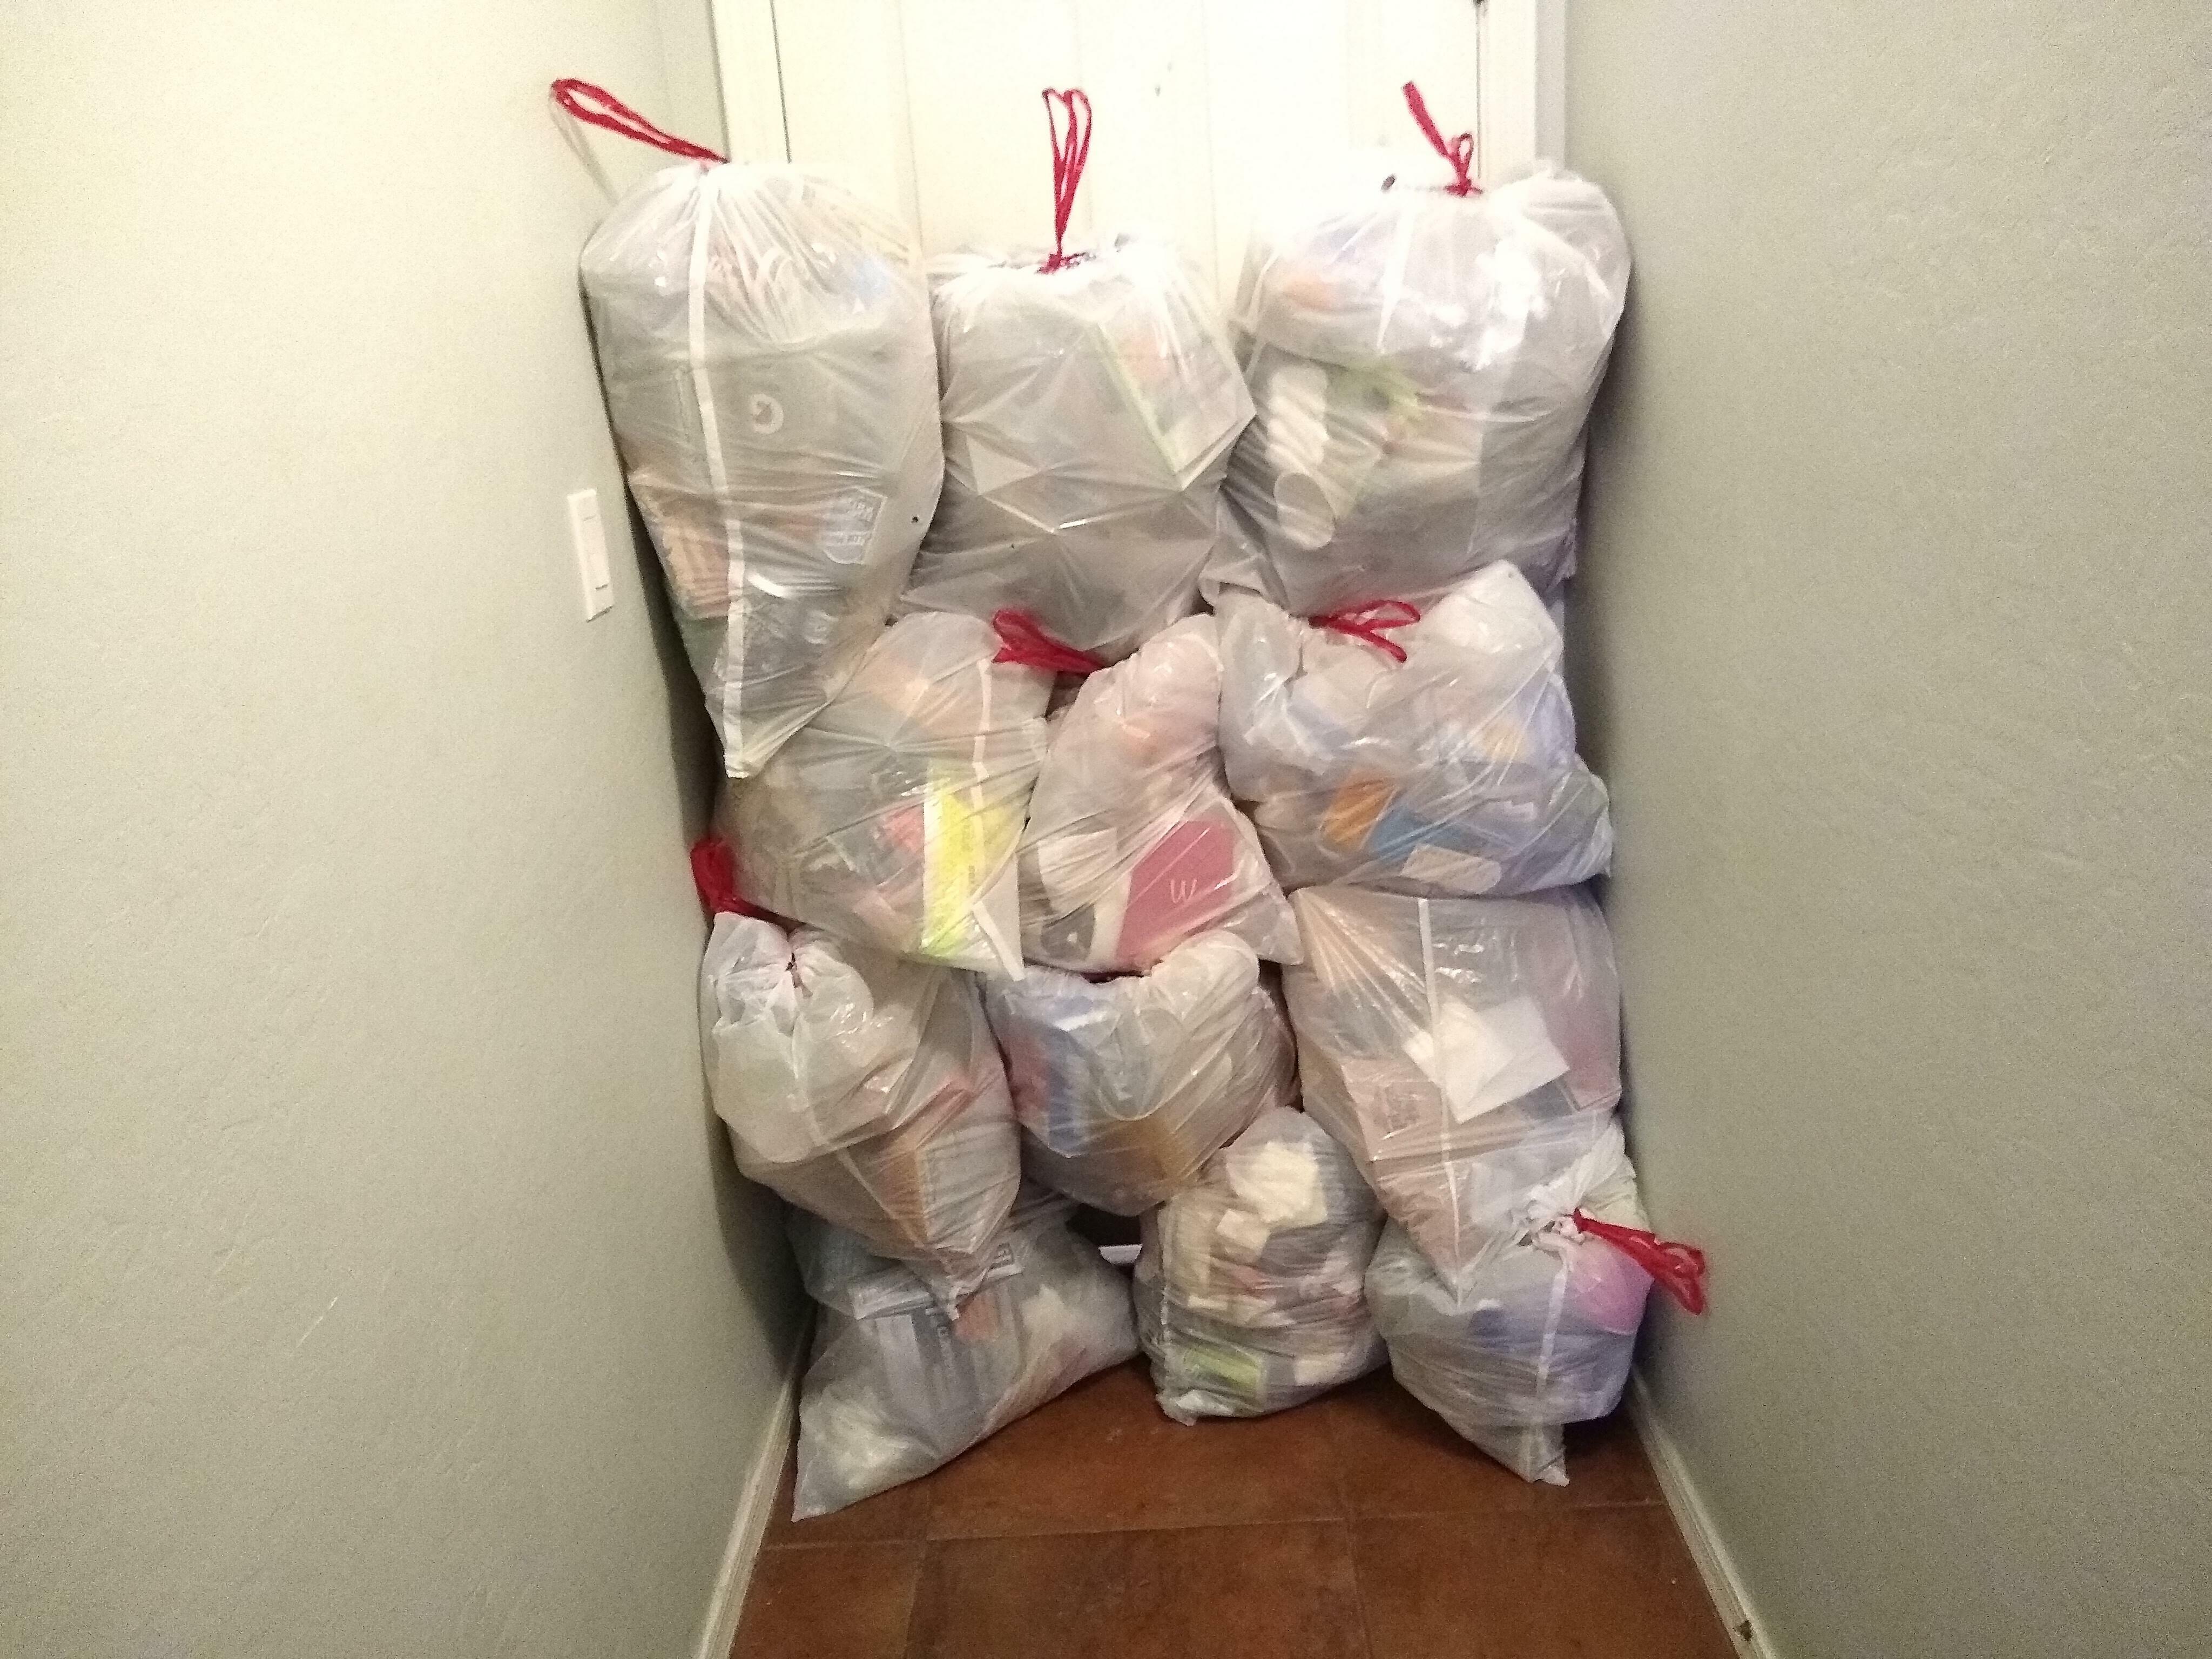 Les 12 sacs d'ordures que j'ai sortis de ma chambre où régnait la dépression. N'oubliez pas de prendre soin de vous, les gars.